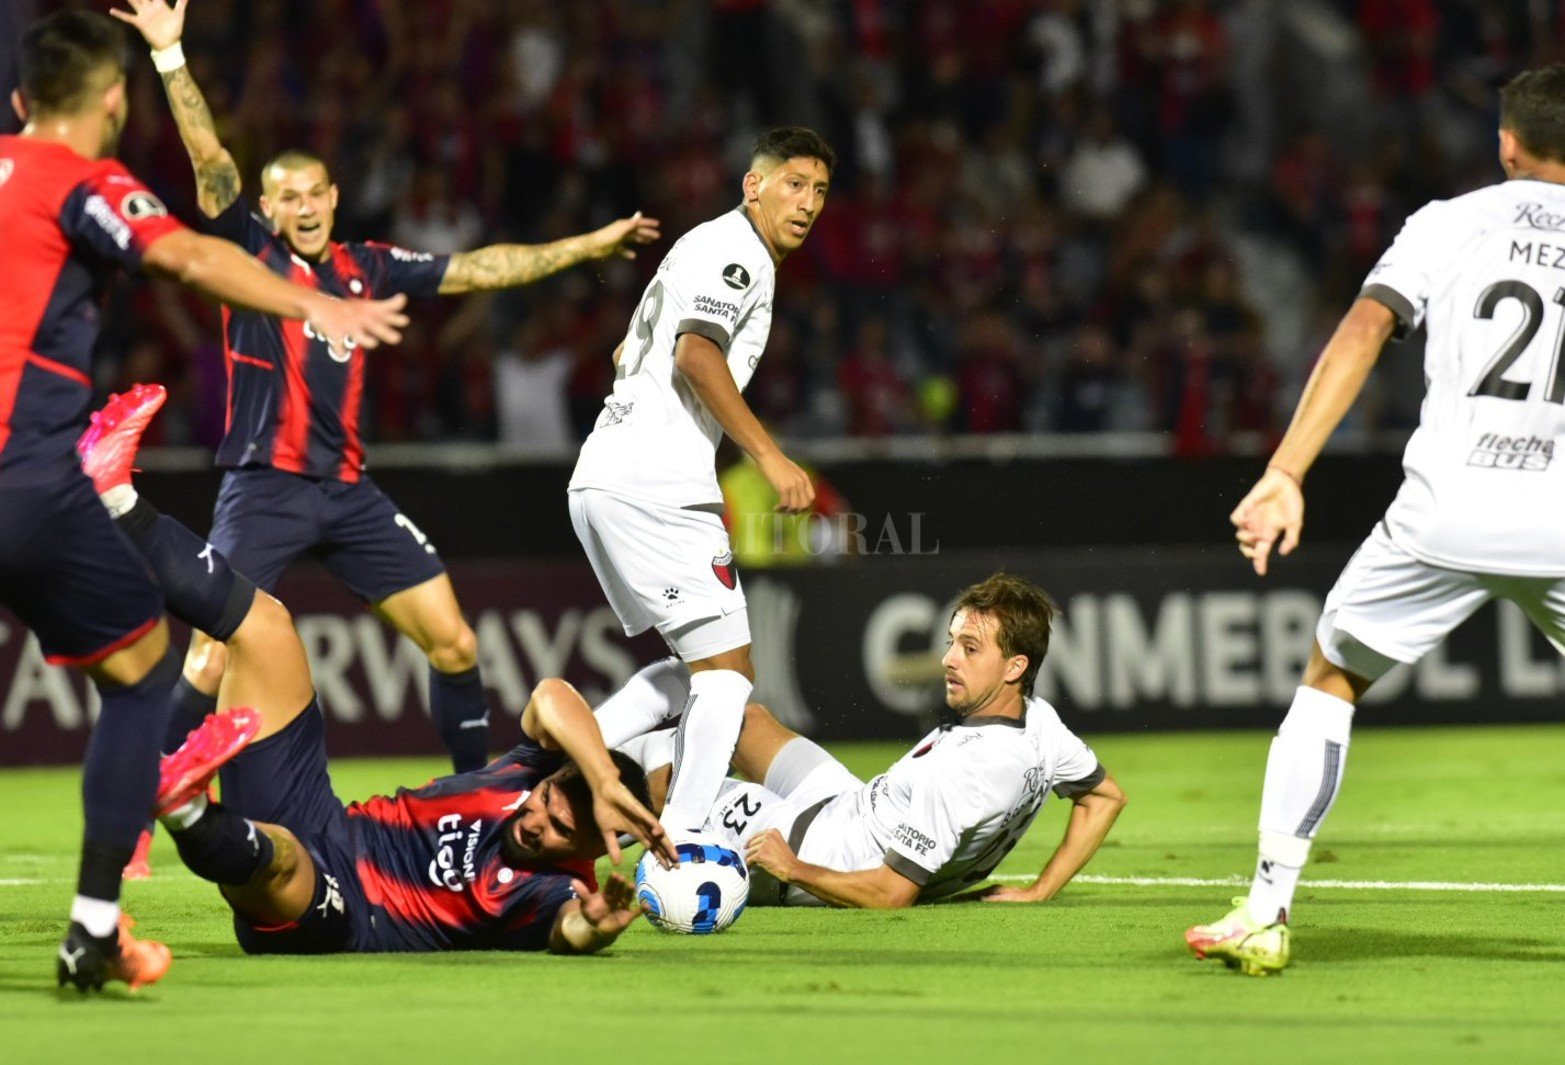 Colón cayó en Asunción ante Cerro Porteño por 3 a 1. El sabalero arrancó ganando, le perdonó la vida cuando pudo ponerlo 0-2 y Cerro resucitó.